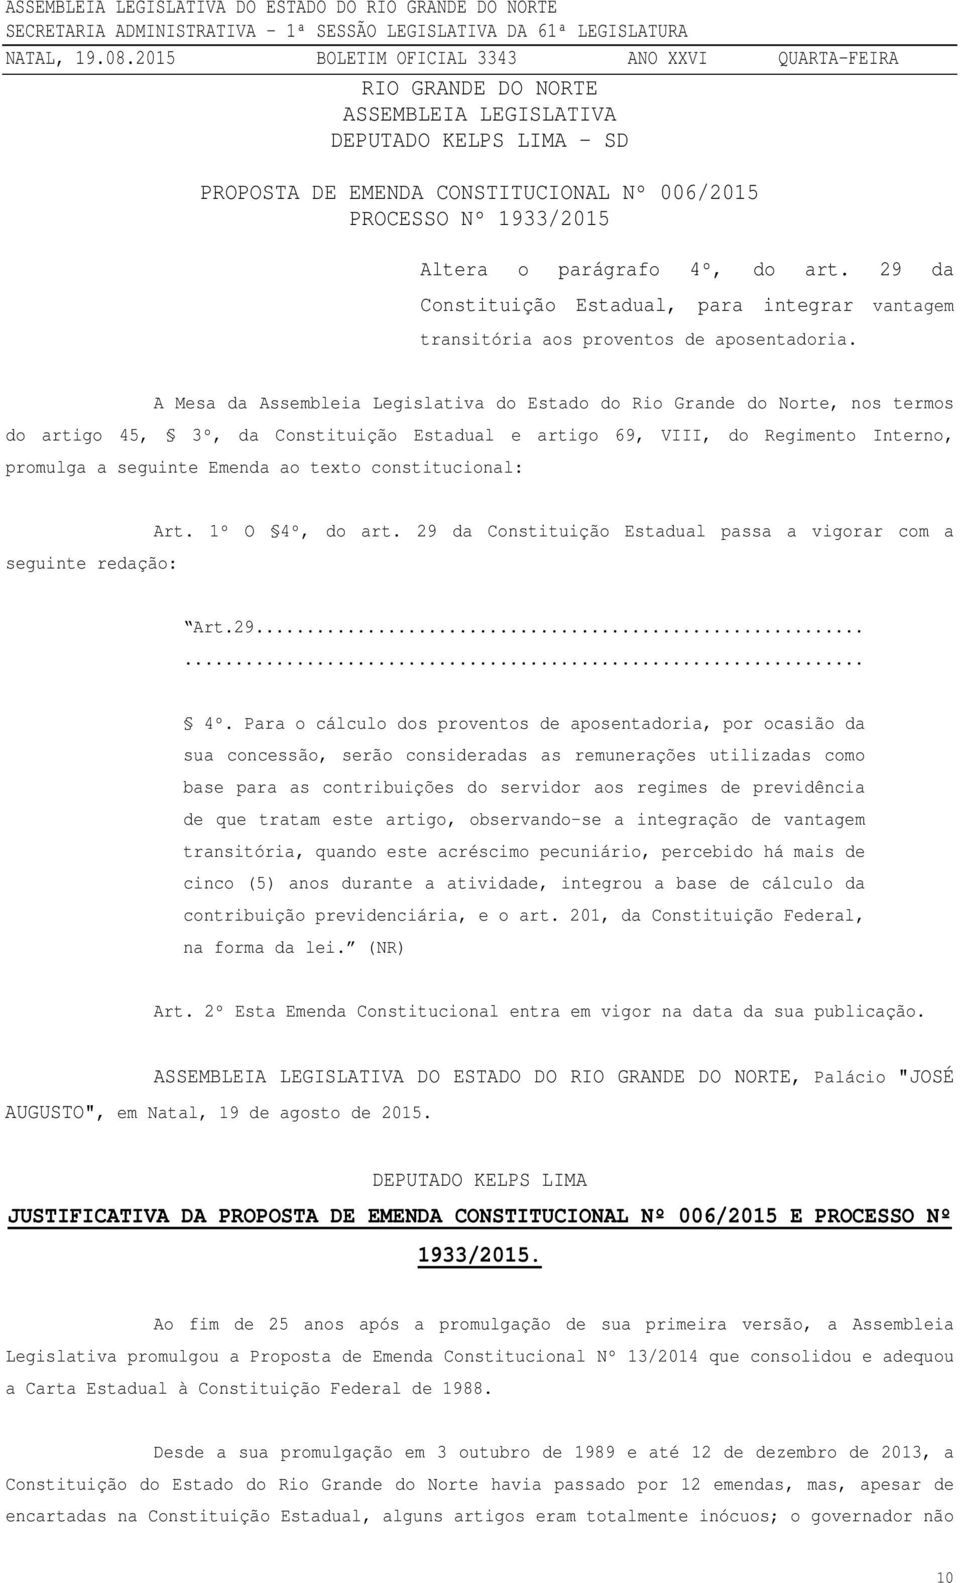 A Mesa da Assembleia Legislativa do Estado do Rio Grande do Norte, nos termos do artigo 45, 3º, da Constituição Estadual e artigo 69, VIII, do Regimento Interno, promulga a seguinte Emenda ao texto